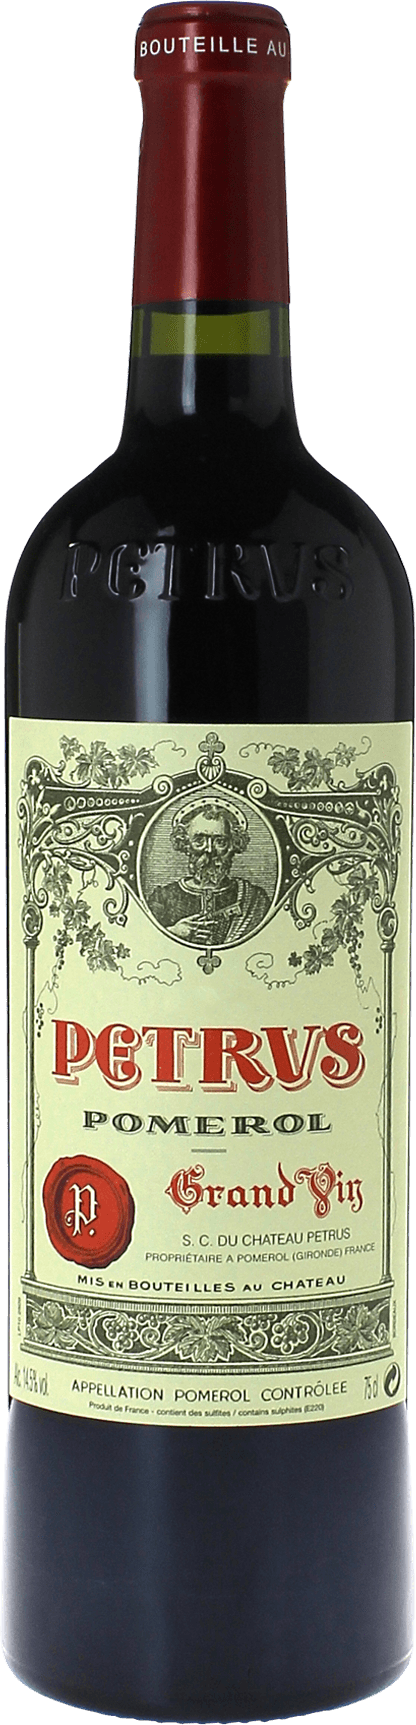 Petrus pomerol 2006  Pomerol, Bordeaux rouge